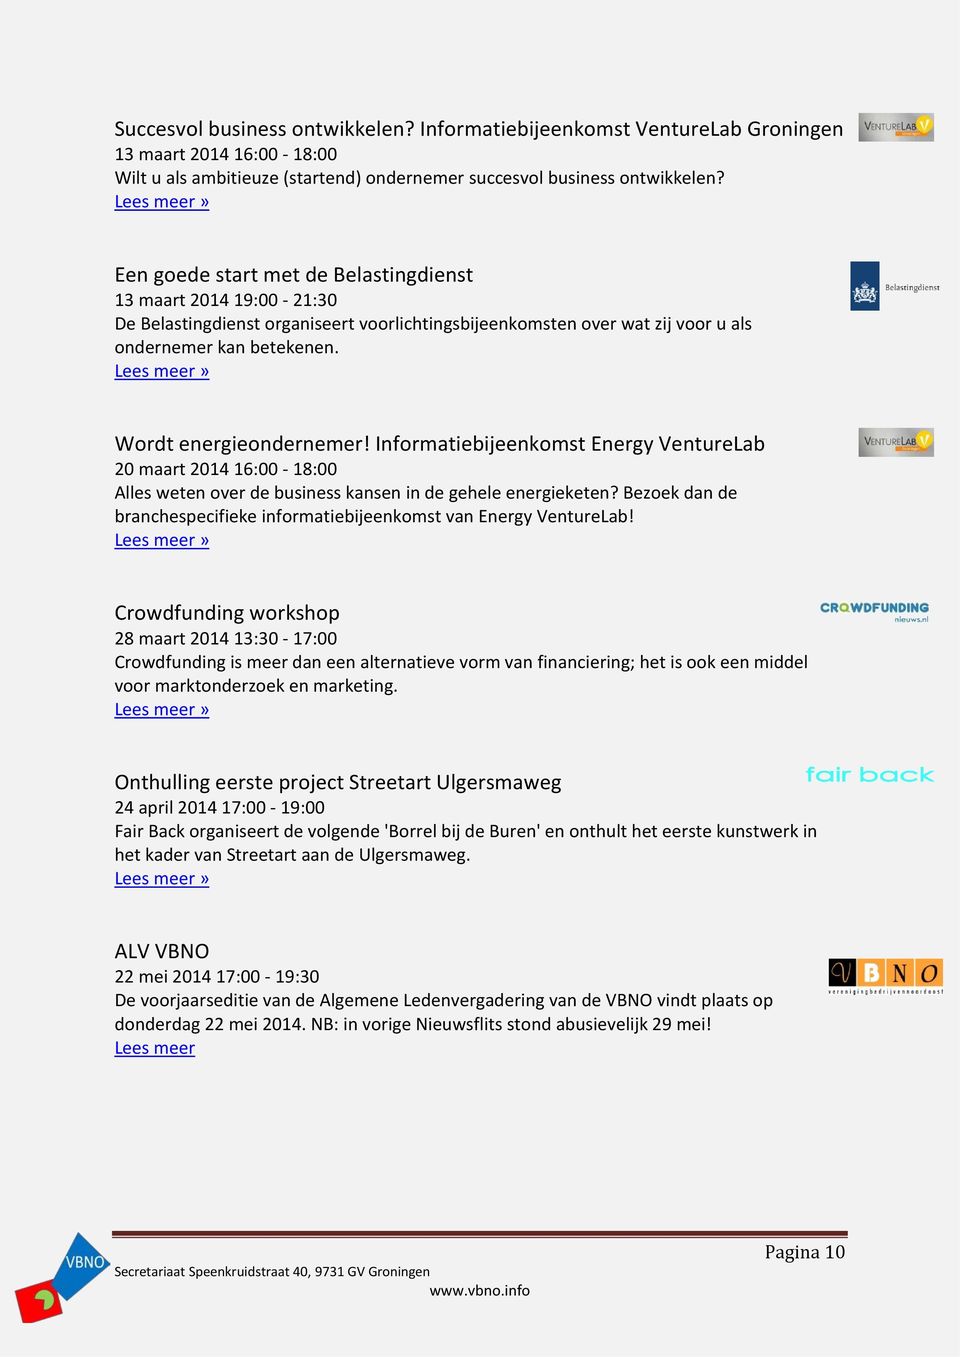 Informatiebijeenkomst Energy VentureLab 20 maart 2014 16:00-18:00 Alles weten over de business kansen in de gehele energieketen?